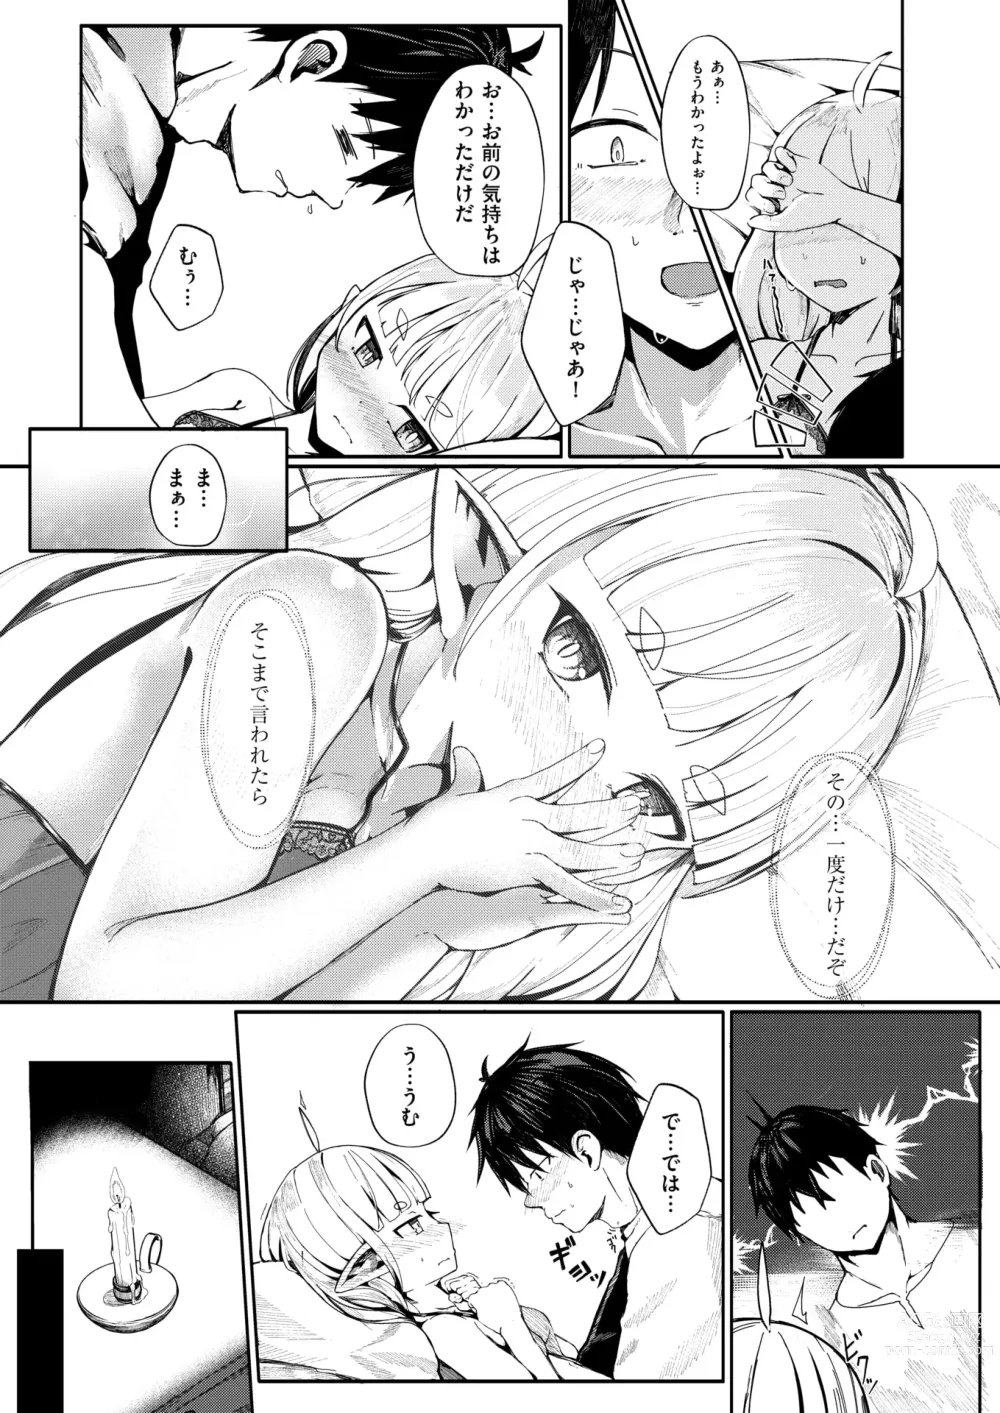 Page 15 of manga Kono Kokoro Oya Shirazu